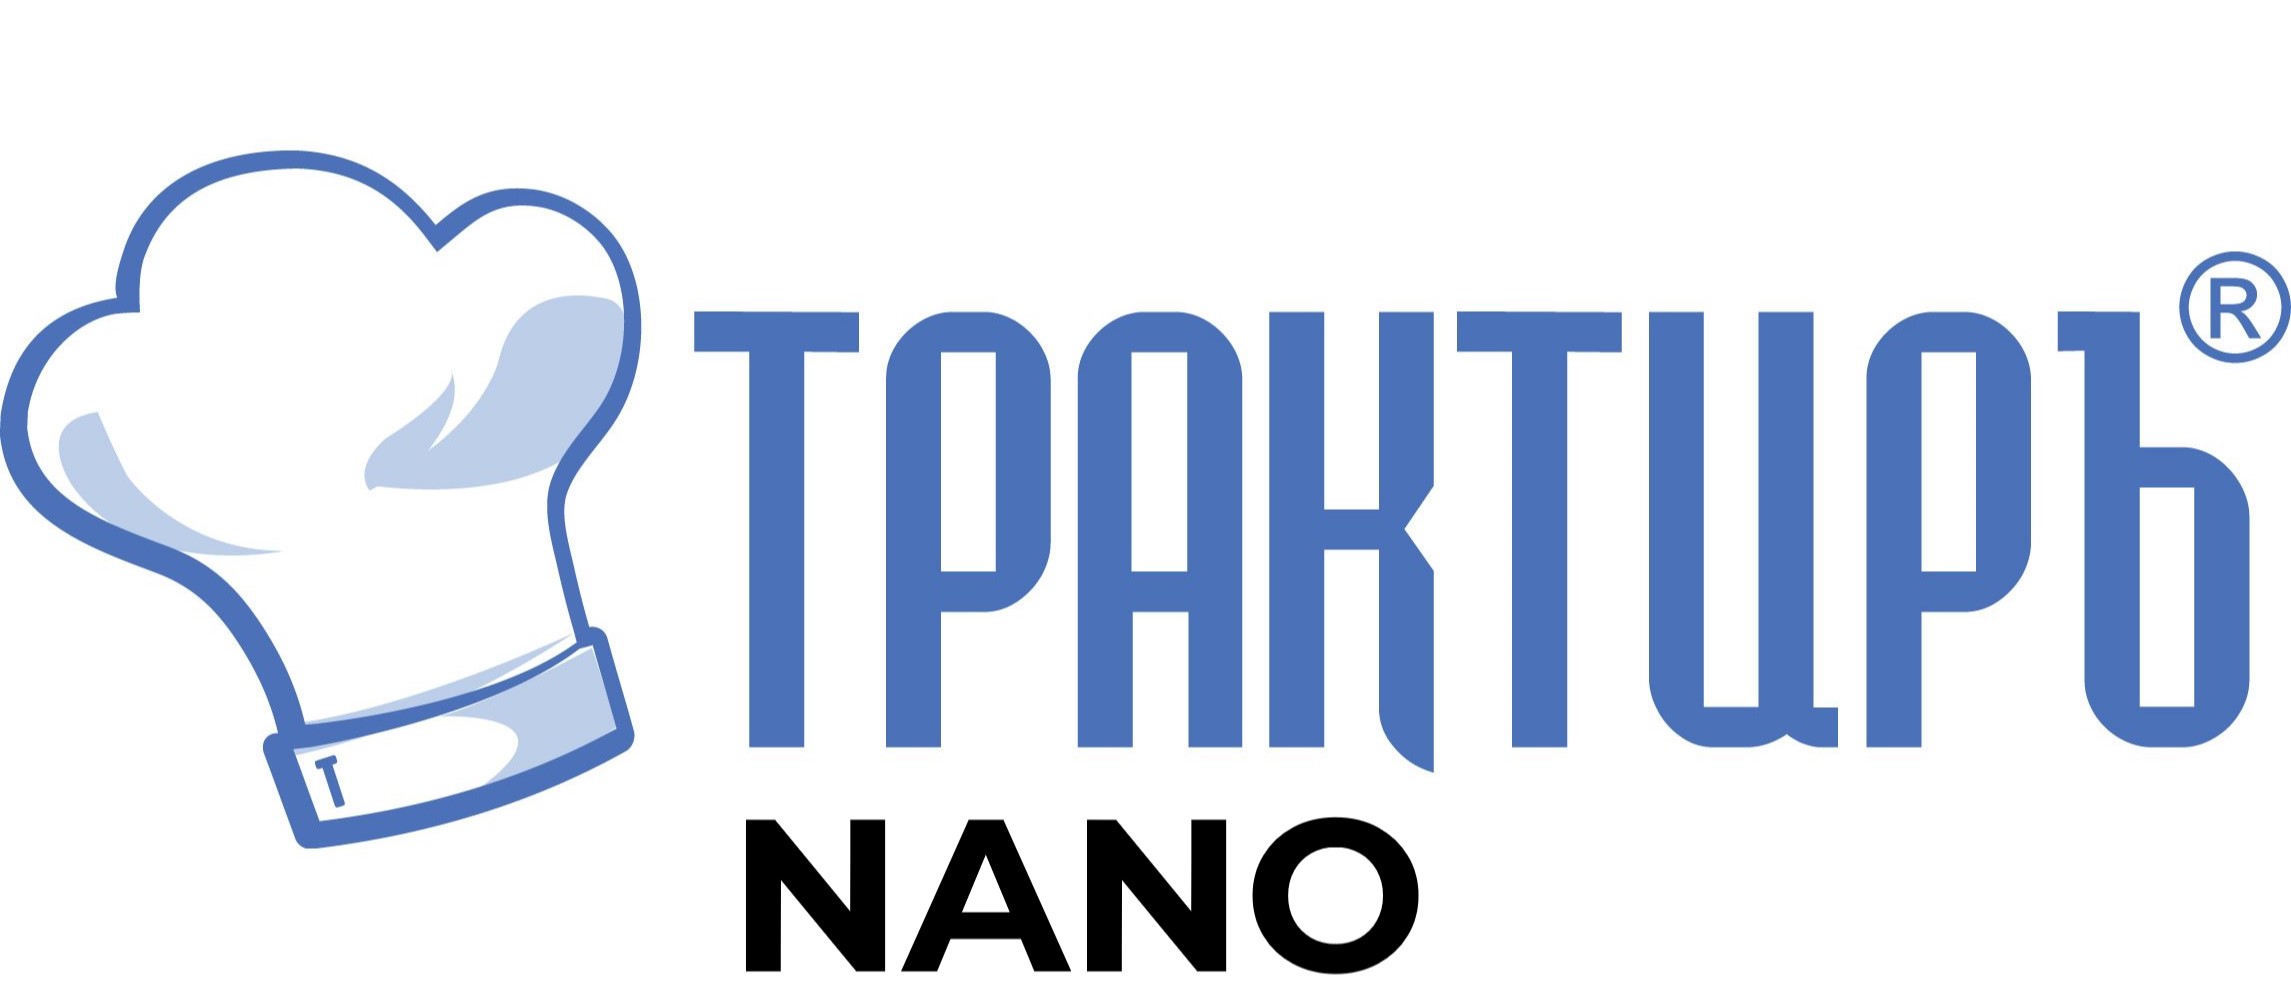 Конфигурация Трактиръ: Nano (Основная поставка) в Челябинске